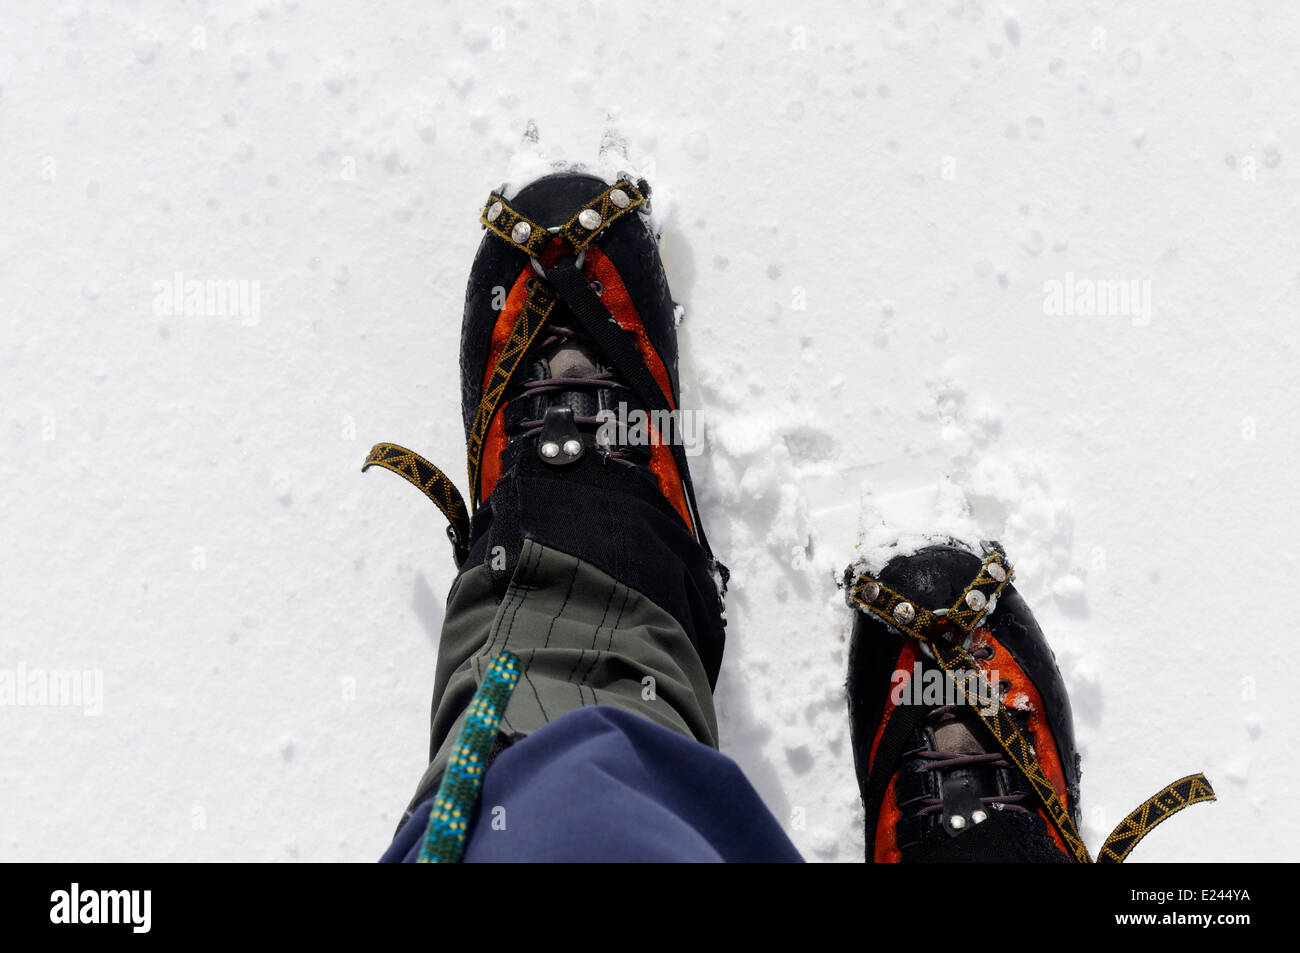 Les pieds de l'alpiniste dans la neige, avec des guêtres, corde et crampons visible Banque D'Images